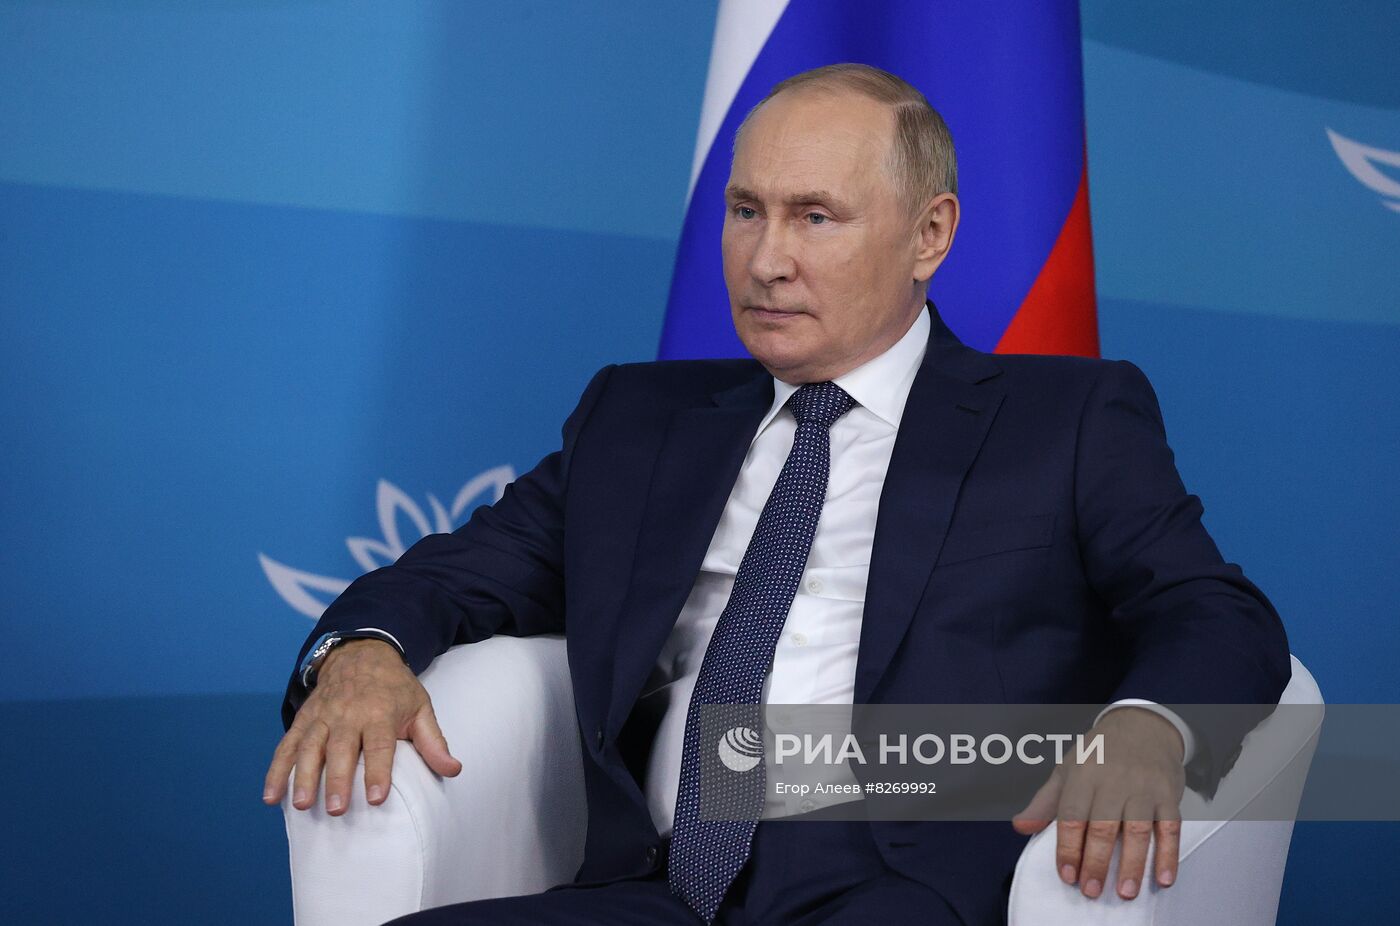 Президент РФ В. Путин принял участие в VII Восточном экономическом форуме